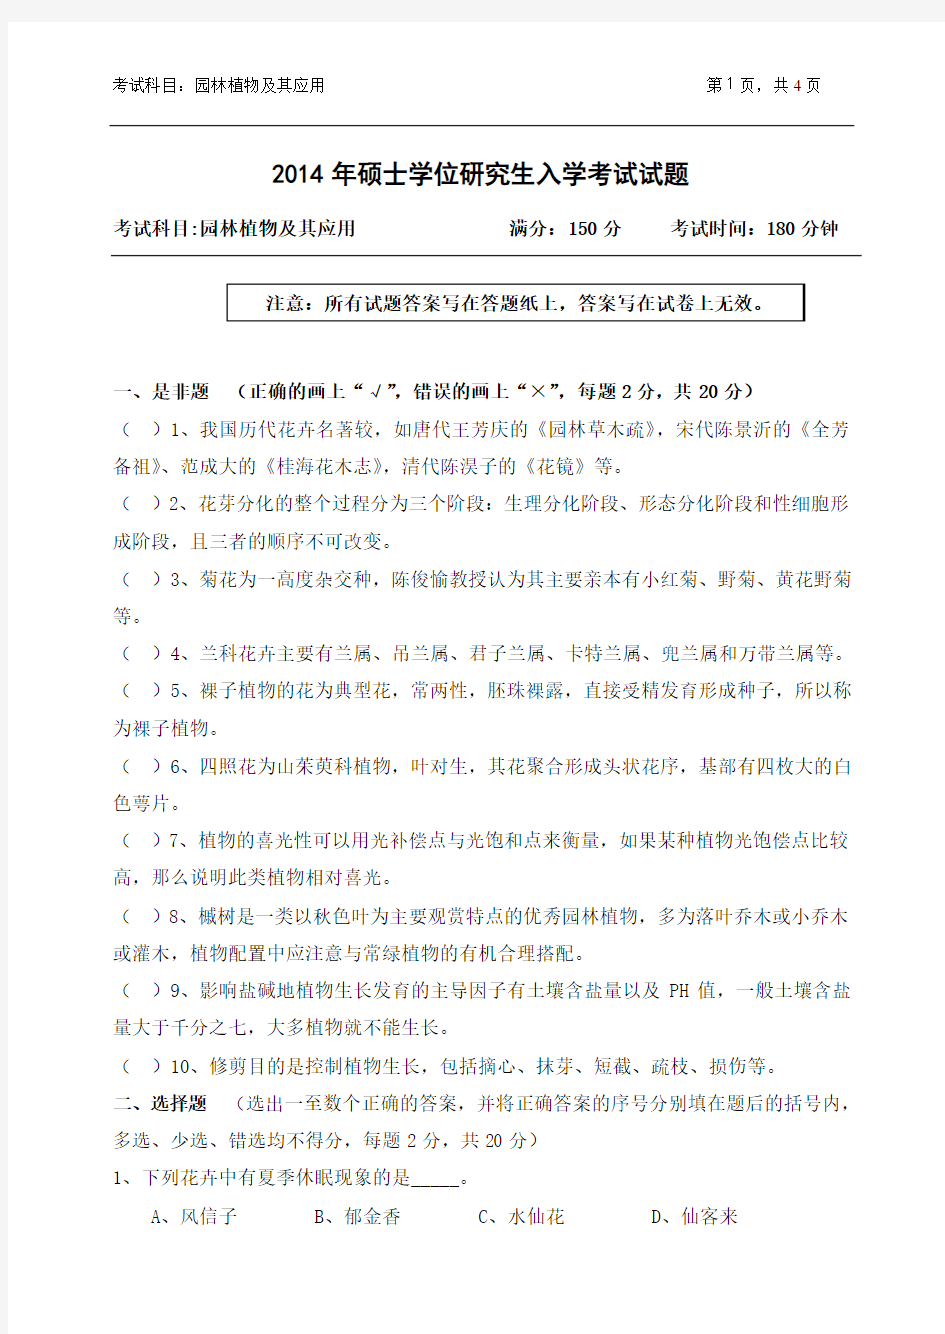 2014浙江农林大学园林植物及其应用